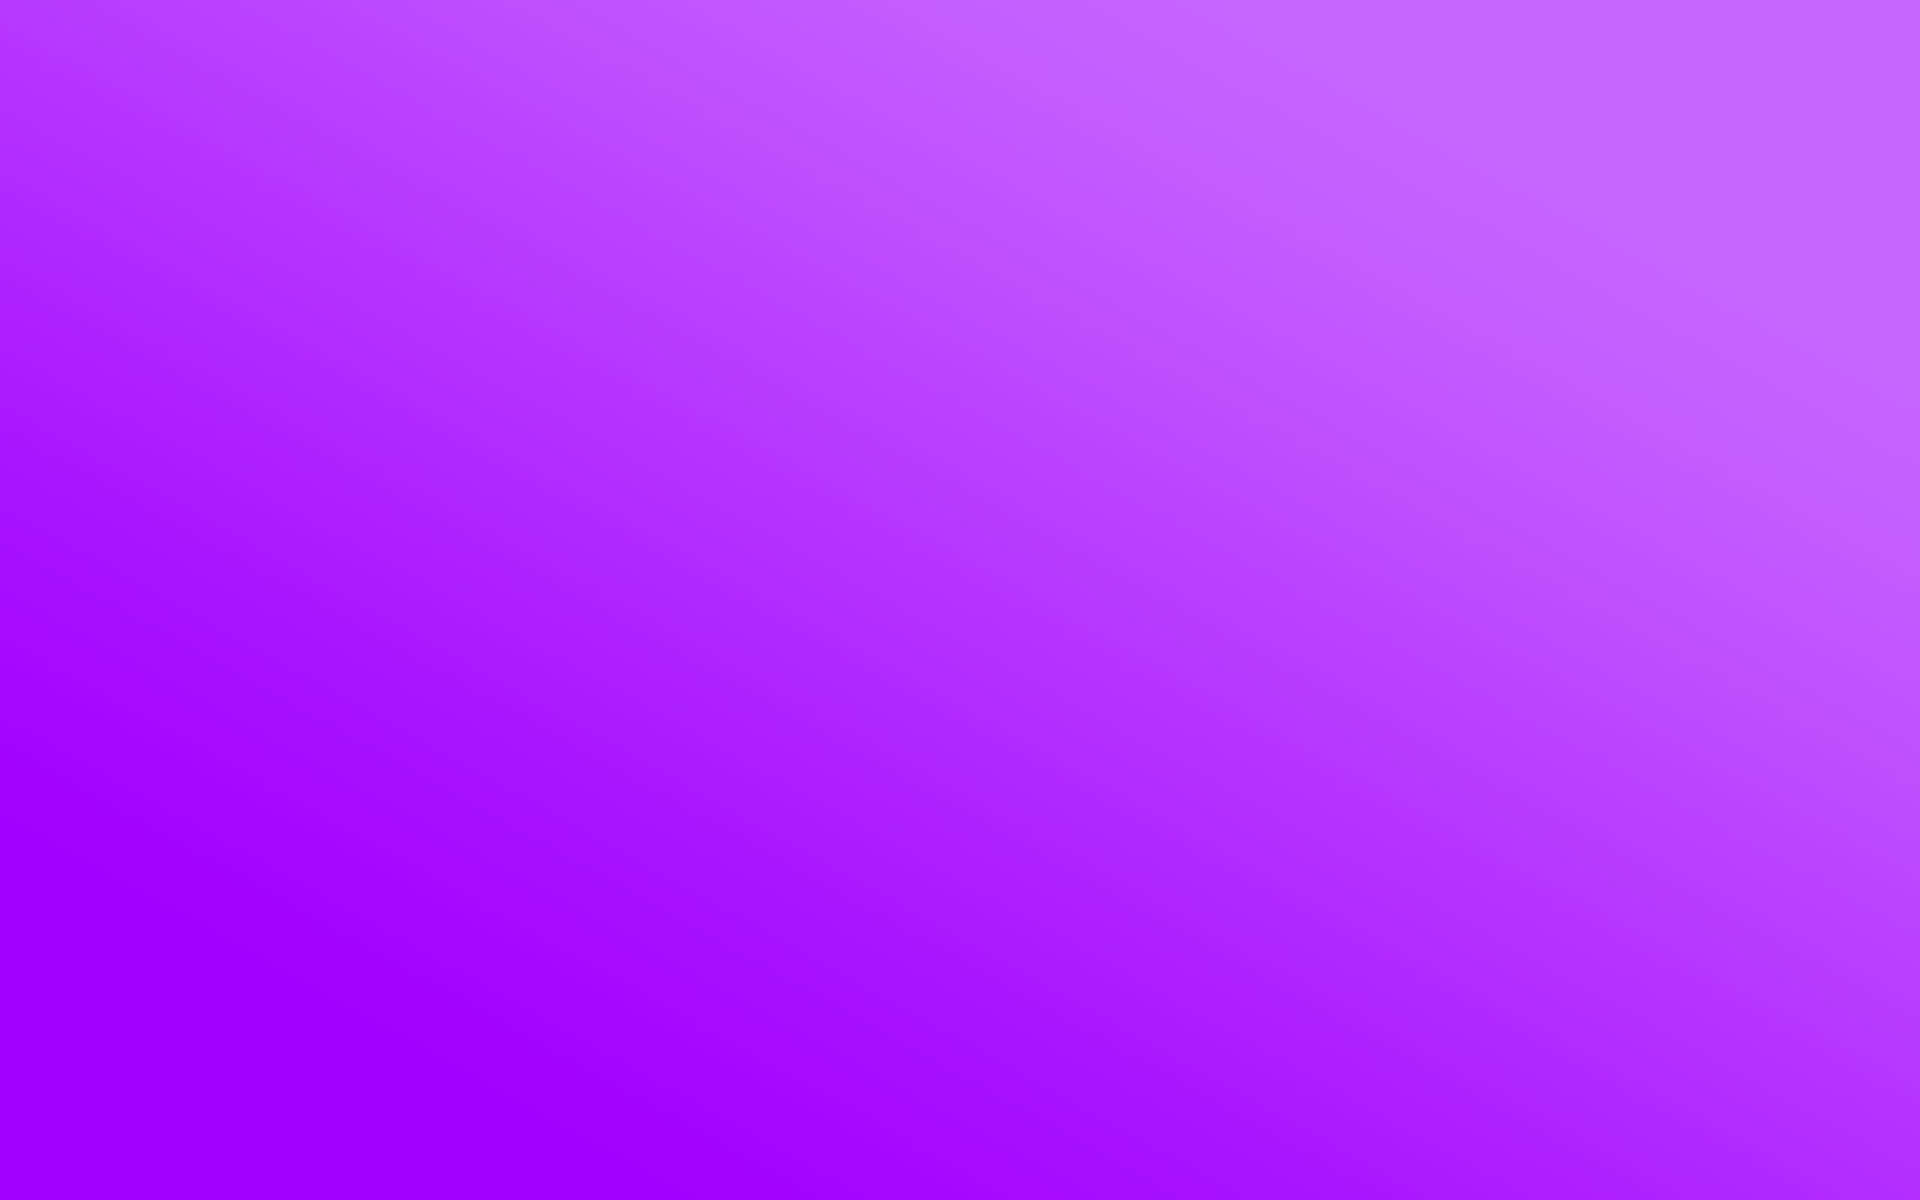 Light Purple Plain Background HD Purple Wallpapers  HD Wallpapers  ID  91945